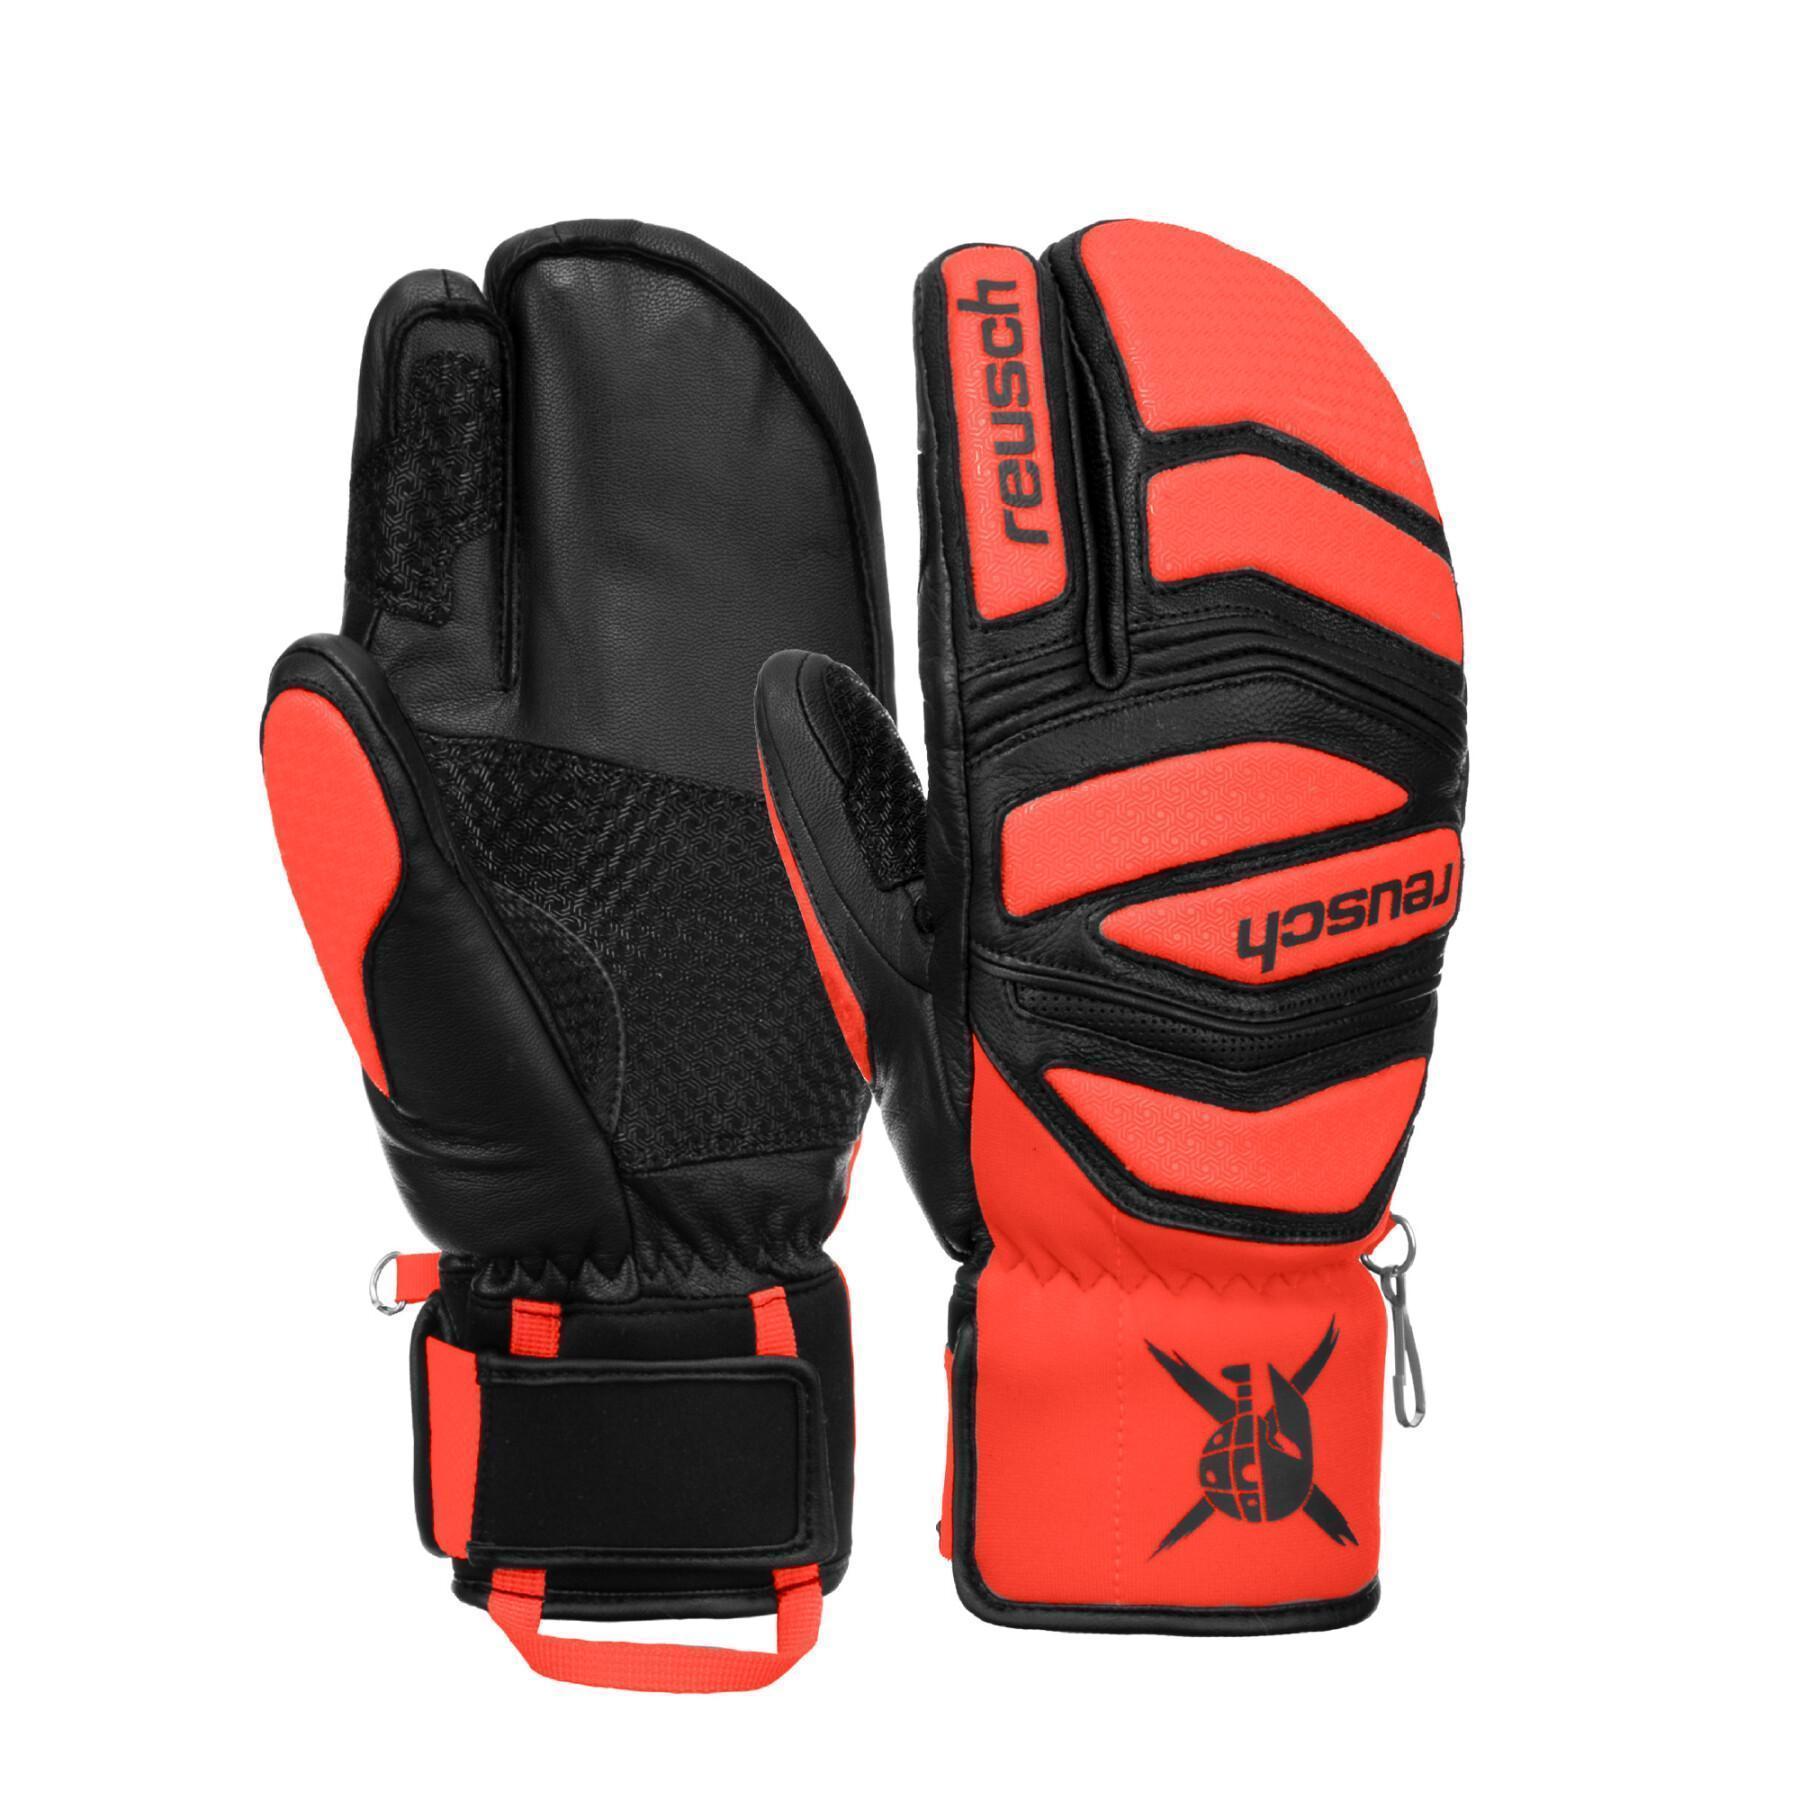 Ski gloves Reusch Worldcup Warrior Lobster